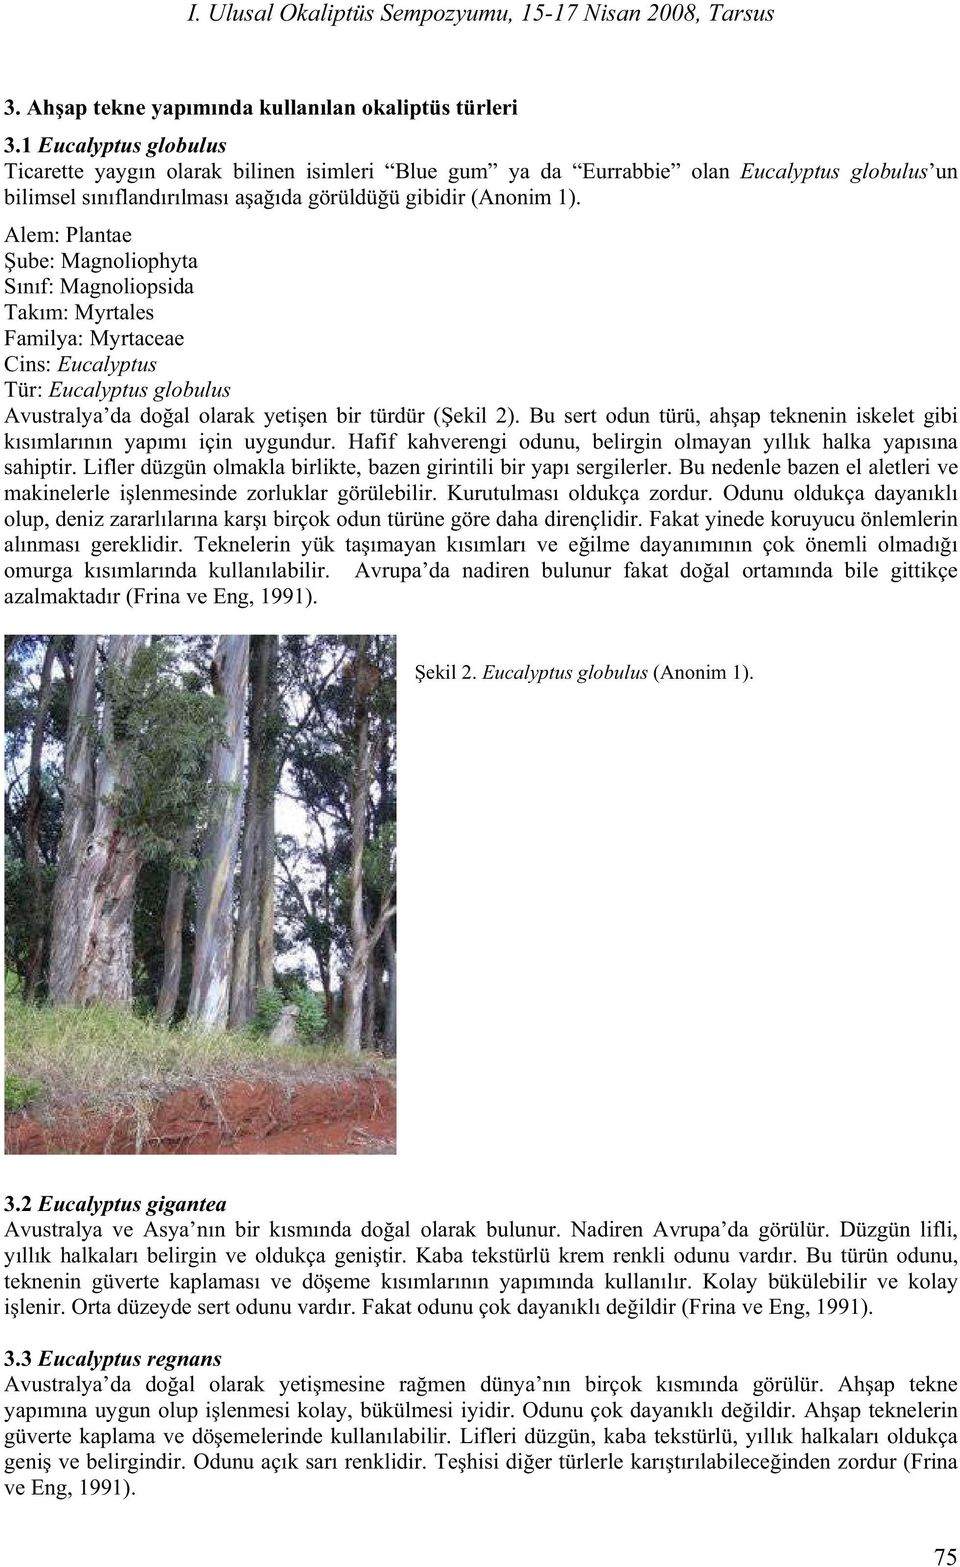 Alem: Plantae ube: Magnoliophyta S n f: Magnoliopsida Tak m: Myrtales Familya: Myrtaceae Cins: Eucalyptus Tür: Eucalyptus globulus Avustralya da do al olarak yeti en bir türdür ( ekil 2).